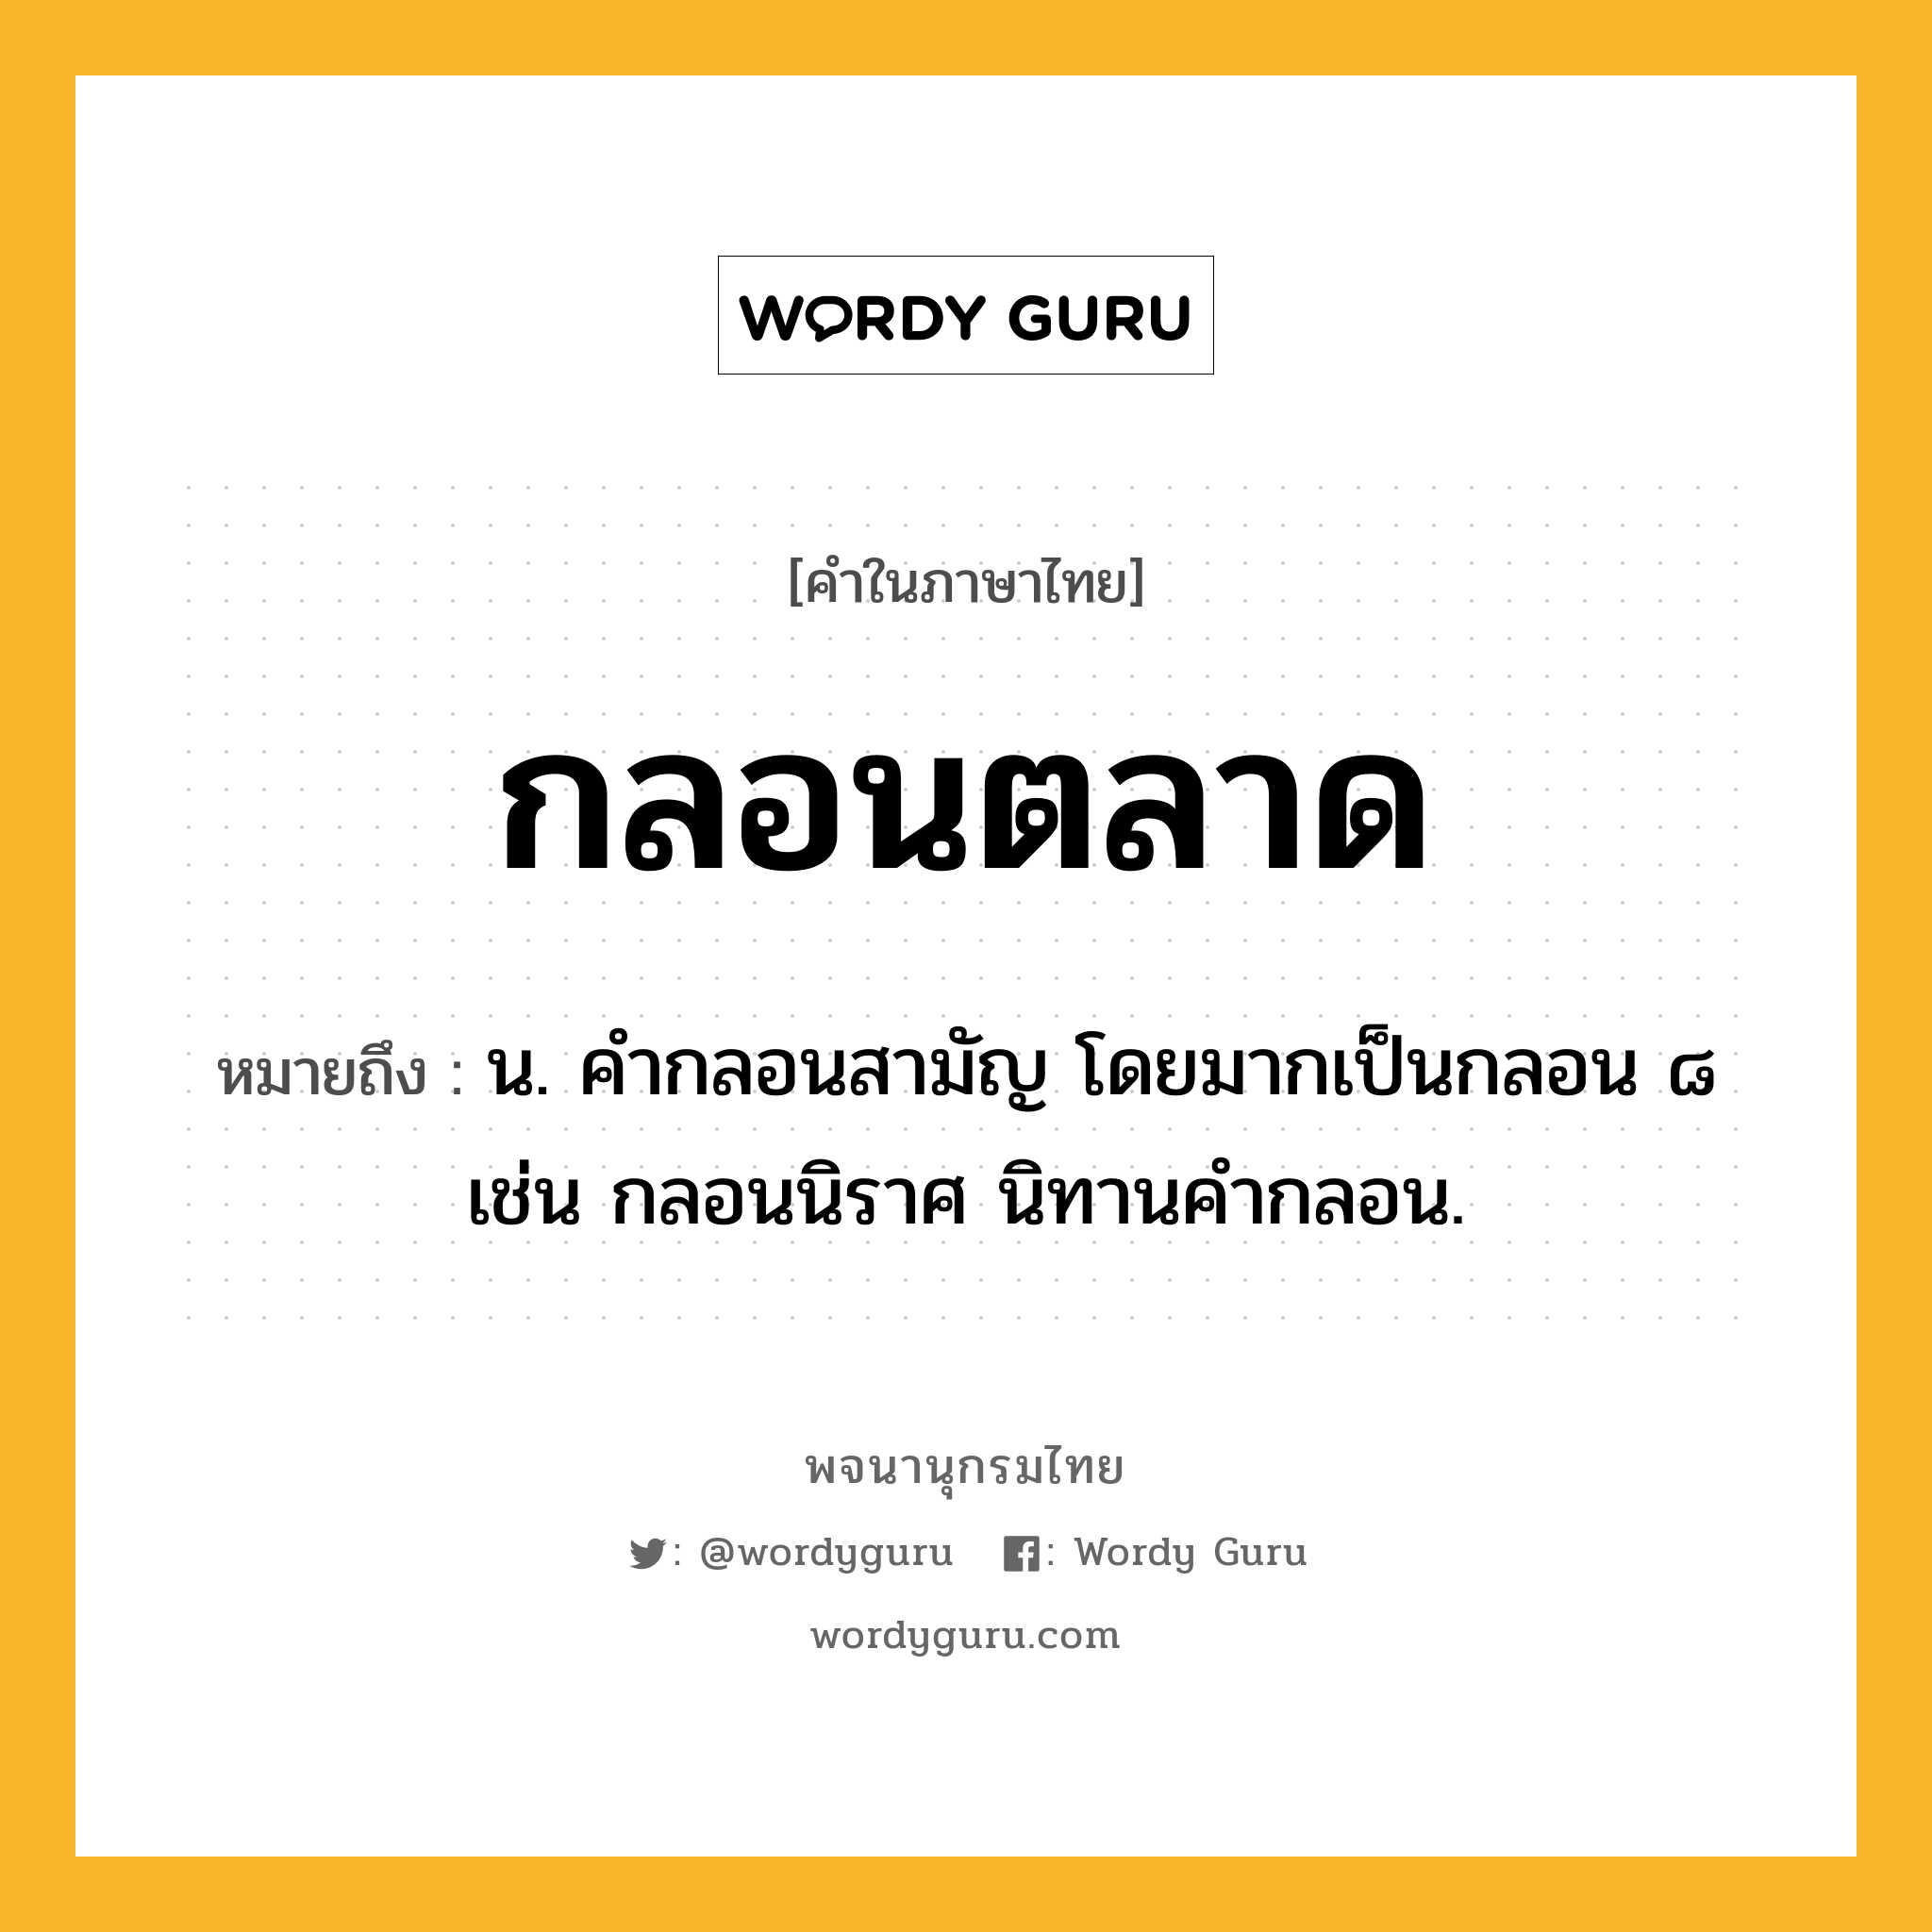 กลอนตลาด ความหมาย หมายถึงอะไร?, คำในภาษาไทย กลอนตลาด หมายถึง น. คํากลอนสามัญ โดยมากเป็นกลอน ๘ เช่น กลอนนิราศ นิทานคำกลอน.